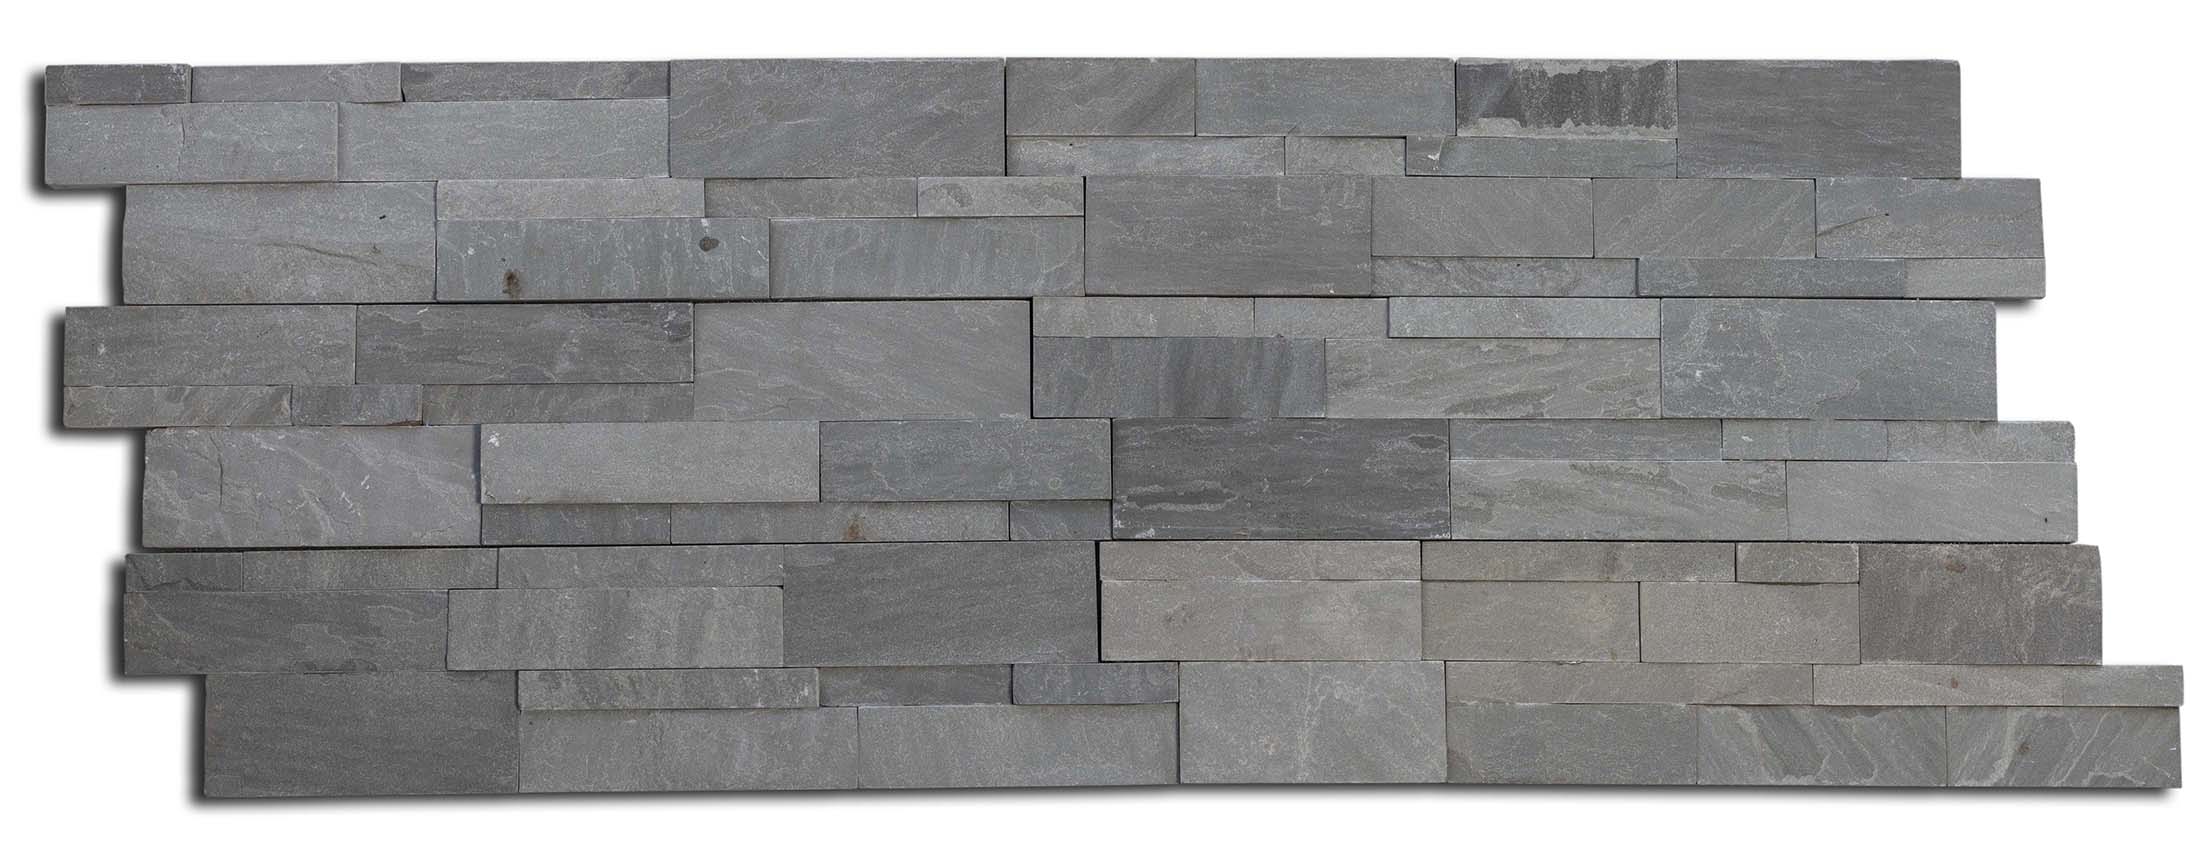 Grey ledge stone